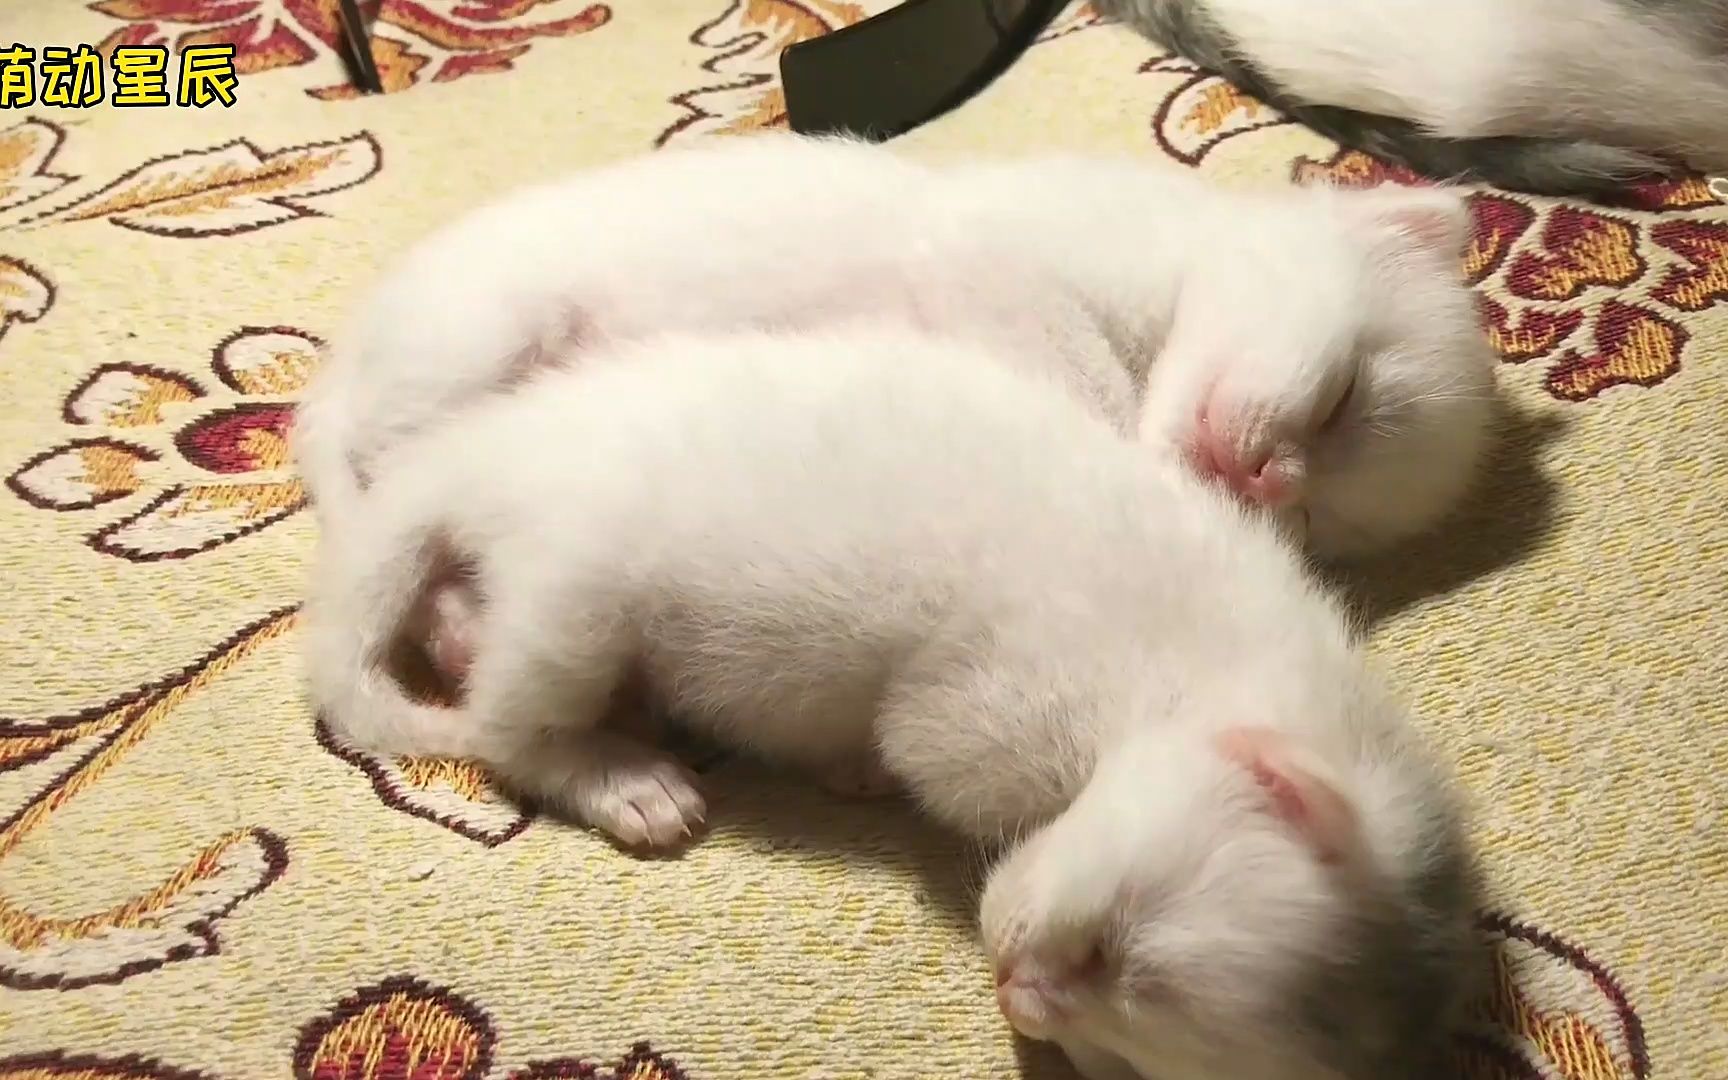 刚出生的龙凤胎小猫崽,软萌可爱,就像一对雪团